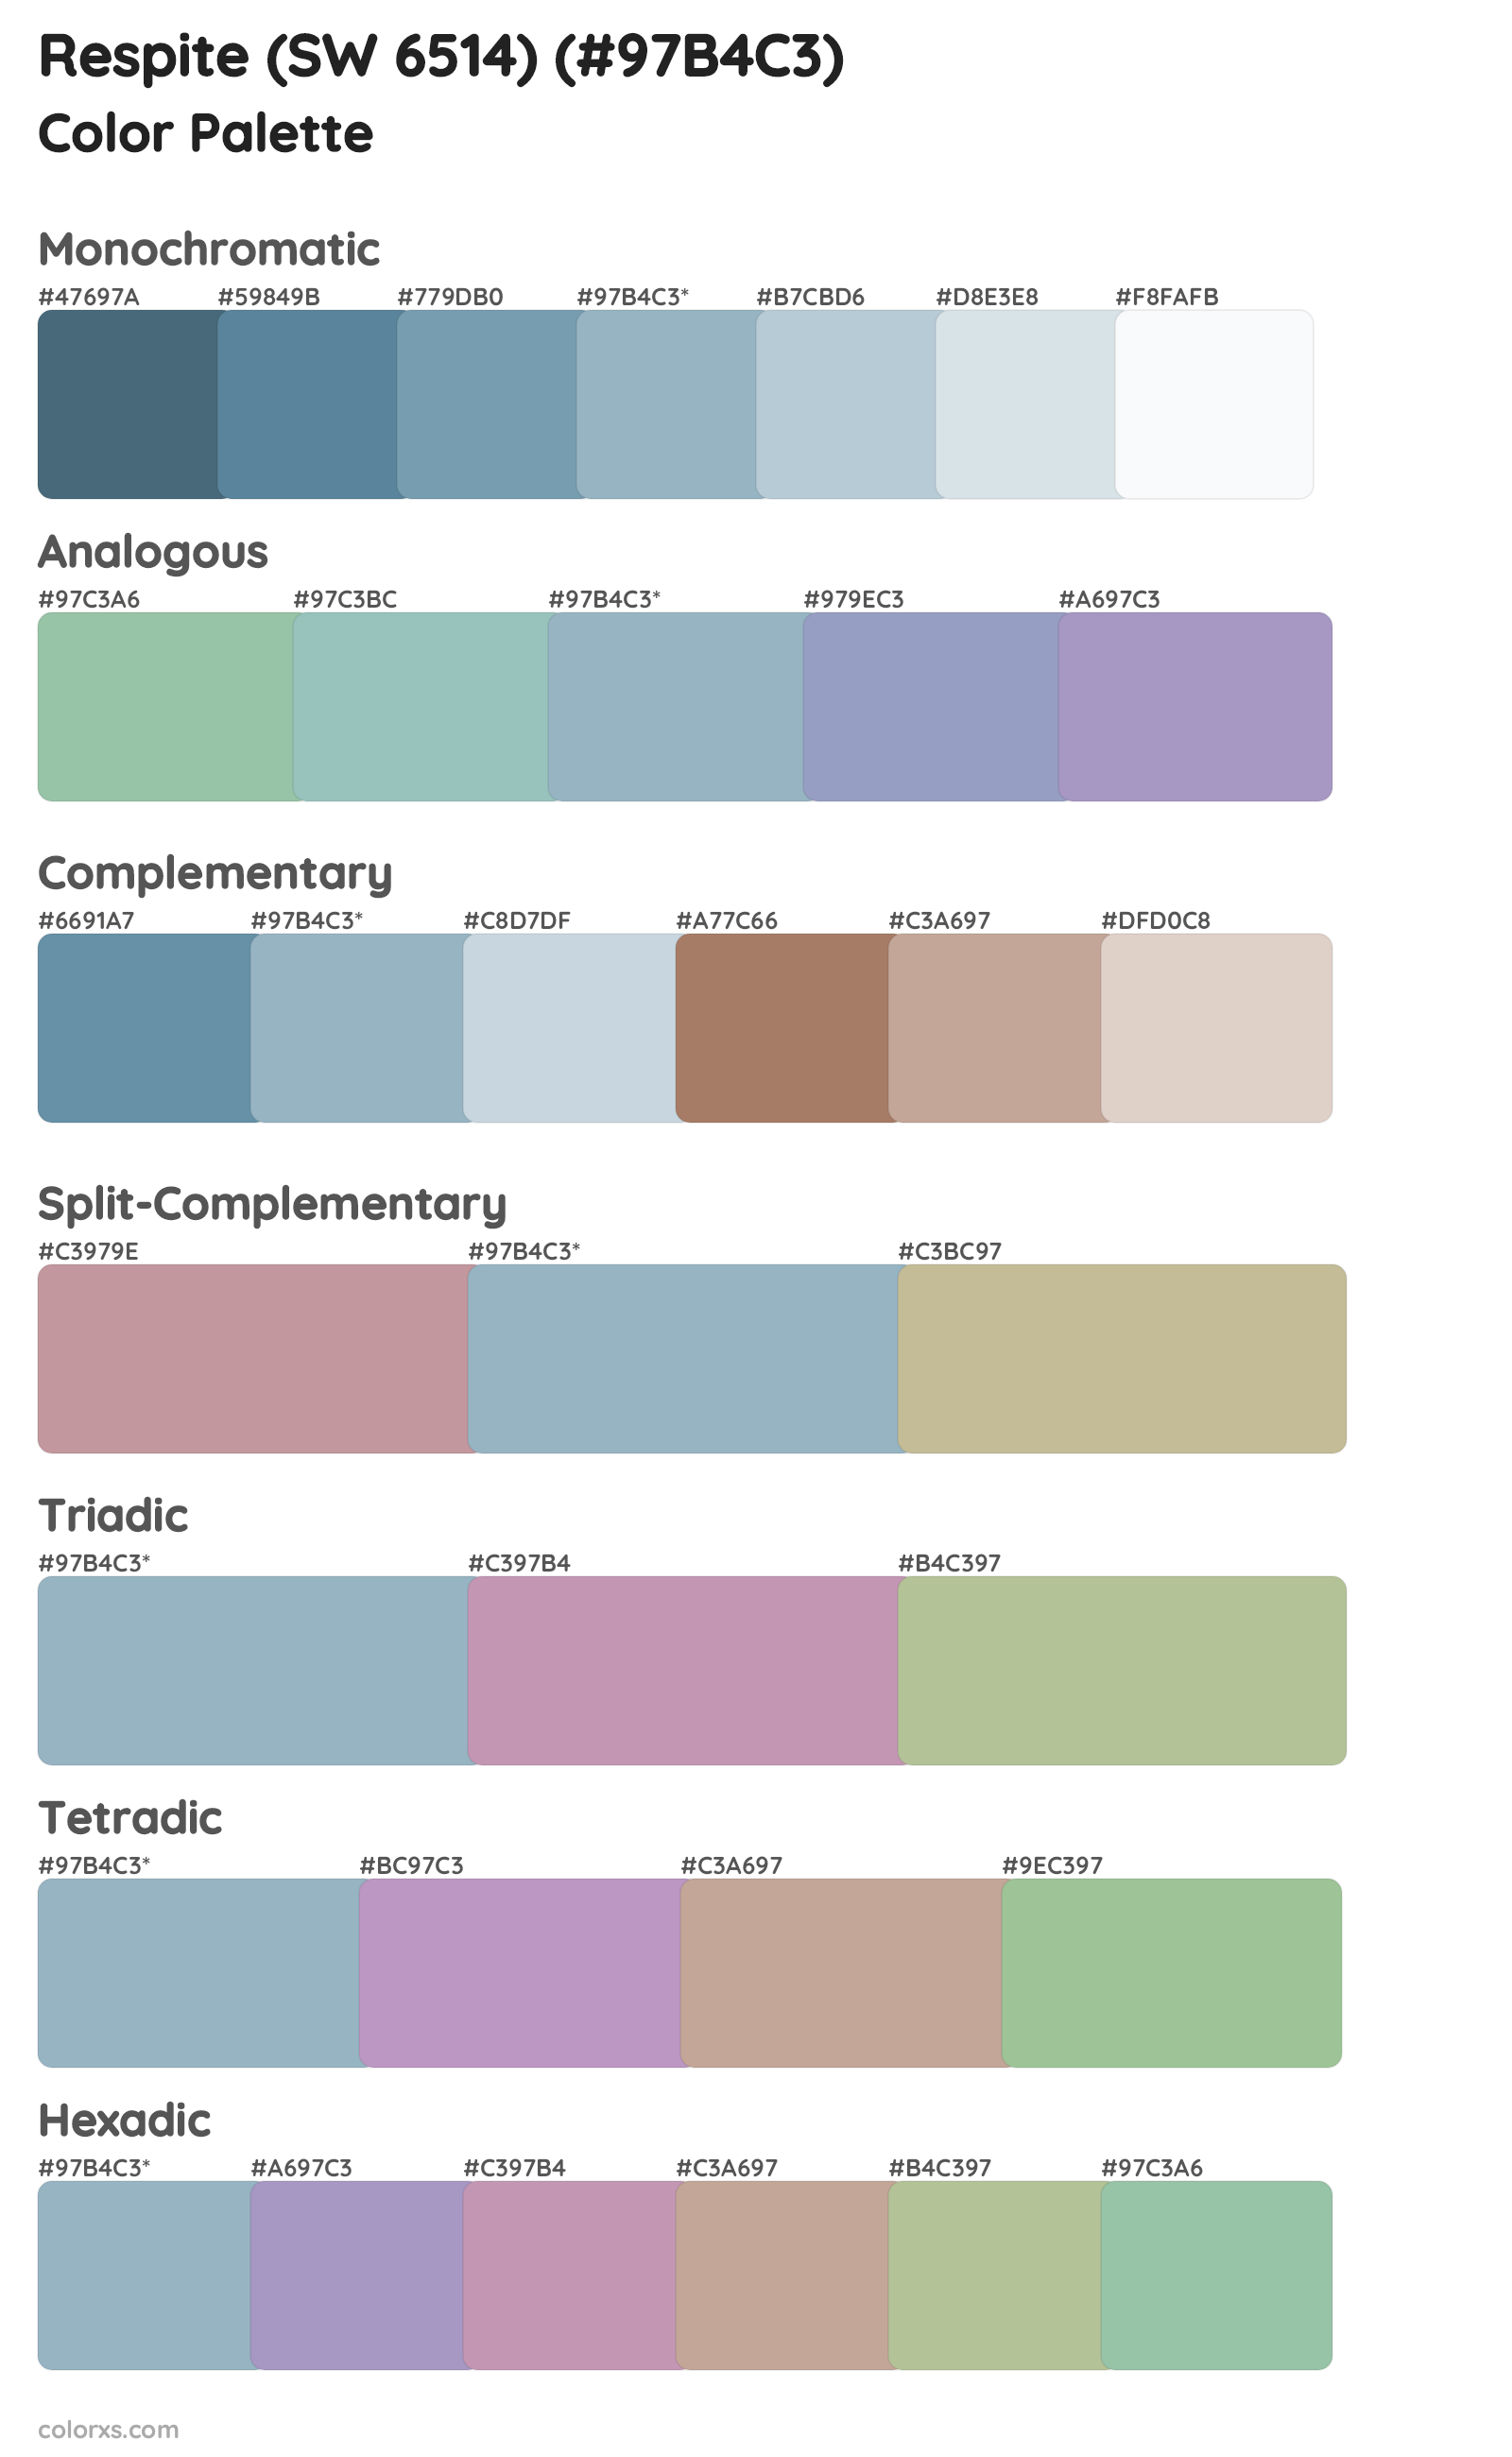 Respite (SW 6514) Color Scheme Palettes